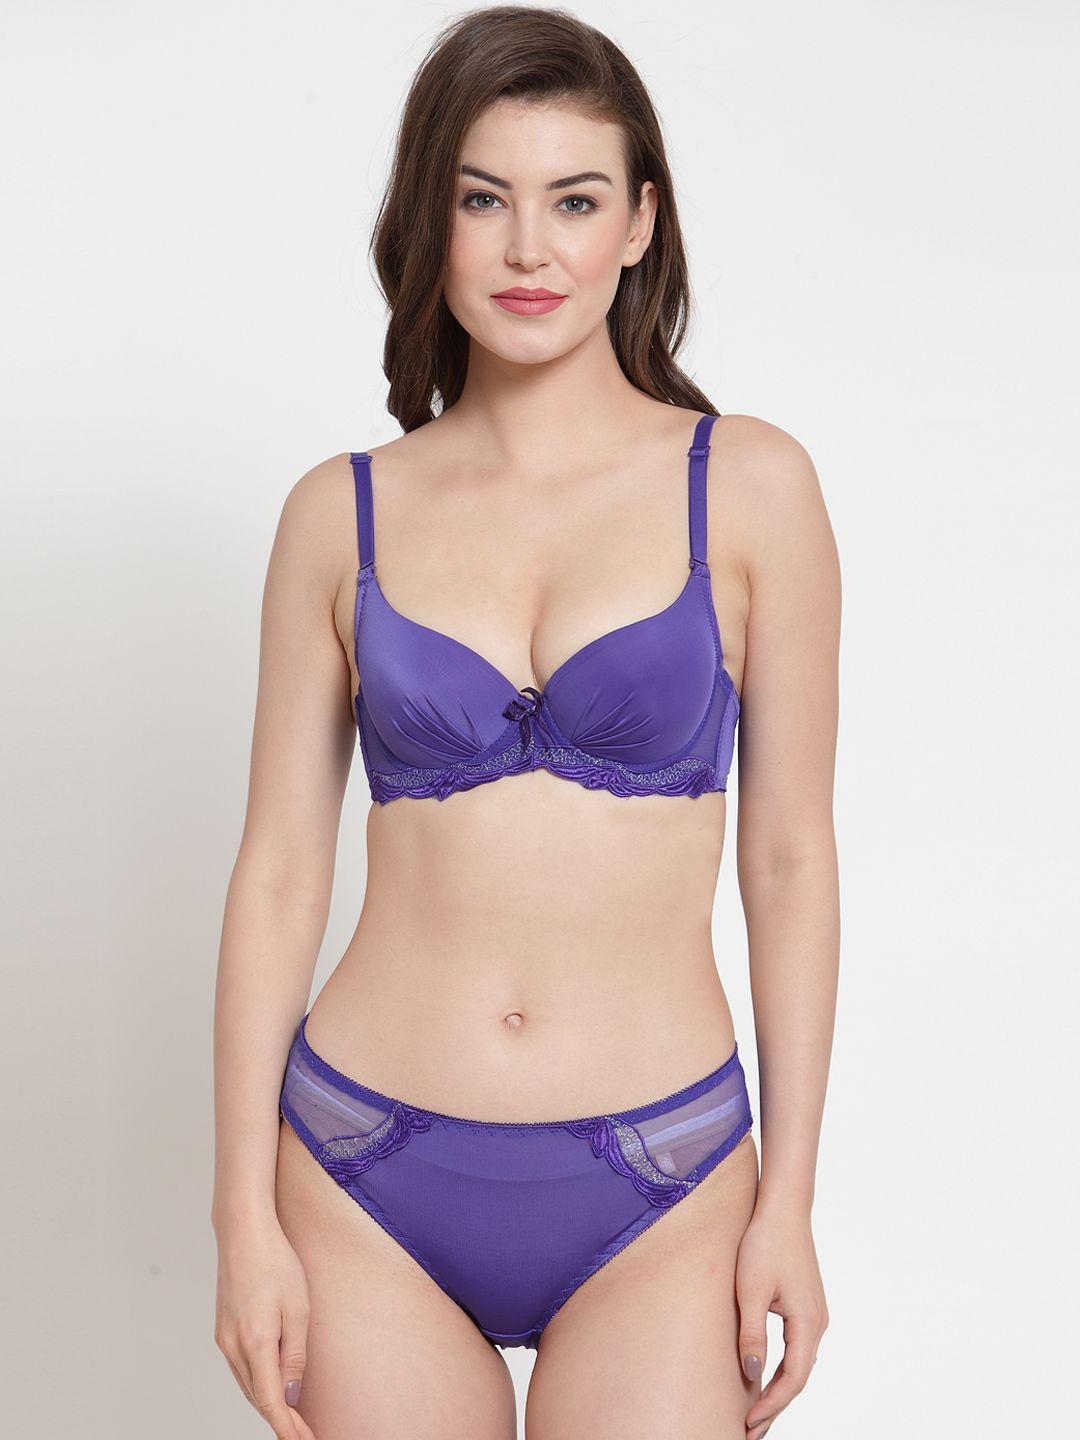 laceandme-women-purple-solid-lingerie-set-4507